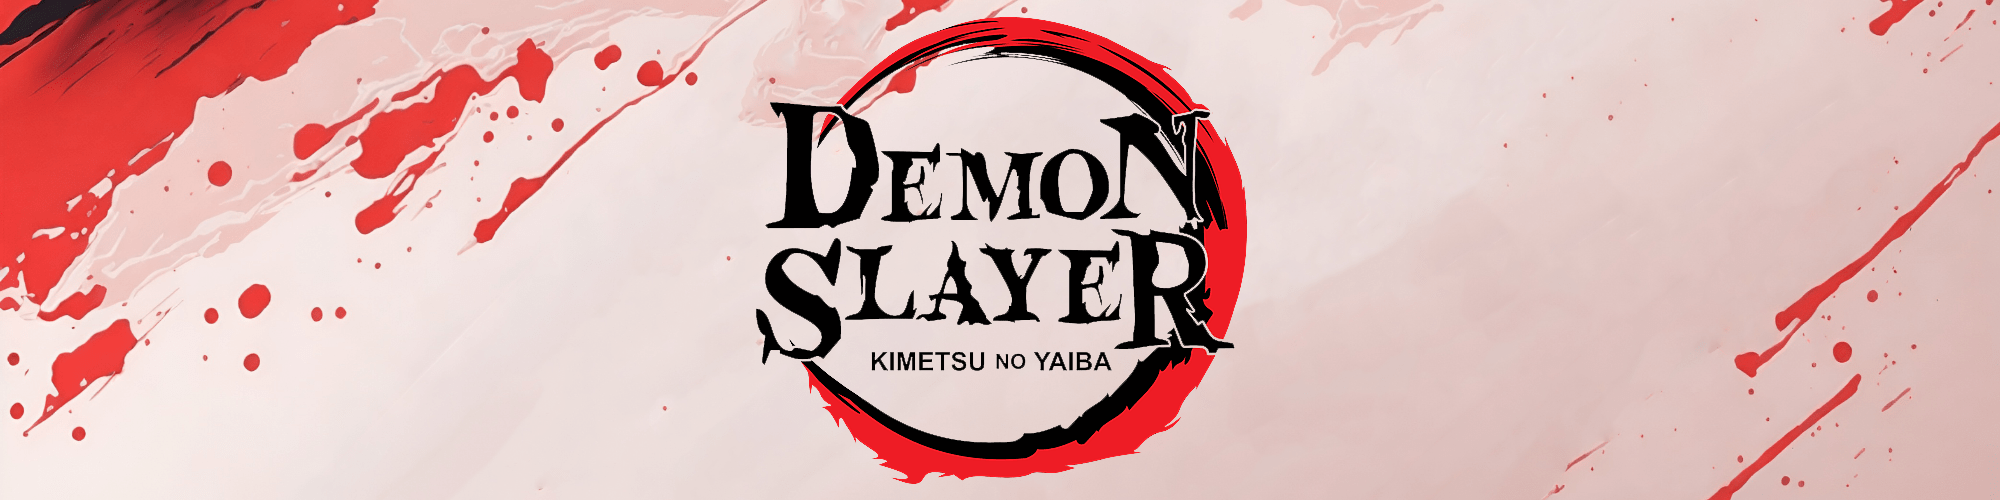 Demon Slayer SVG by svgdrop on DeviantArt